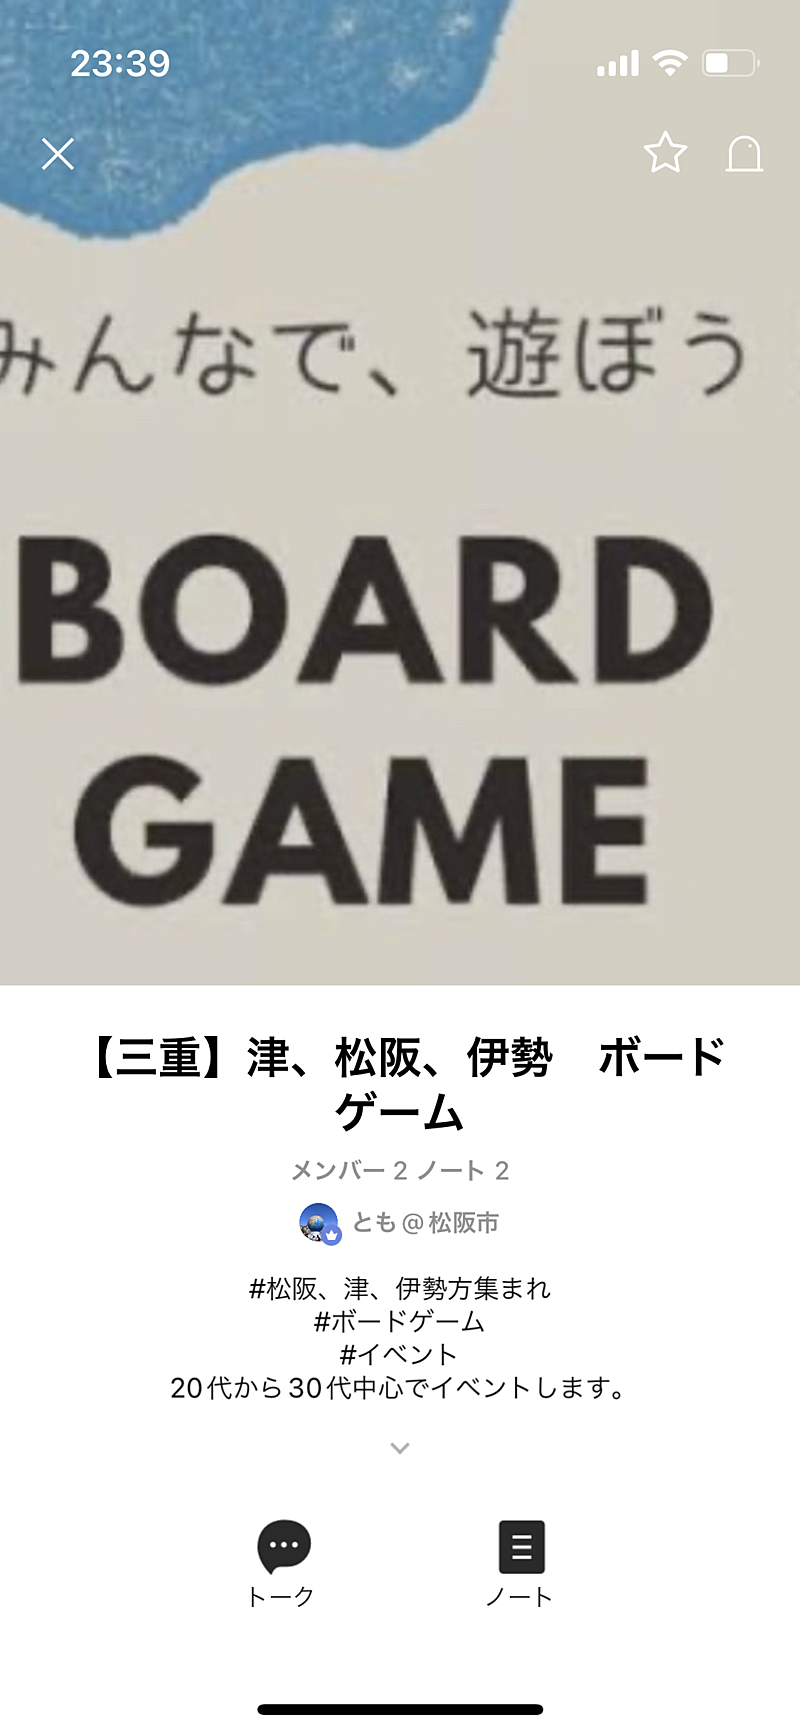 三重県ボードゲームオープンチャット募集